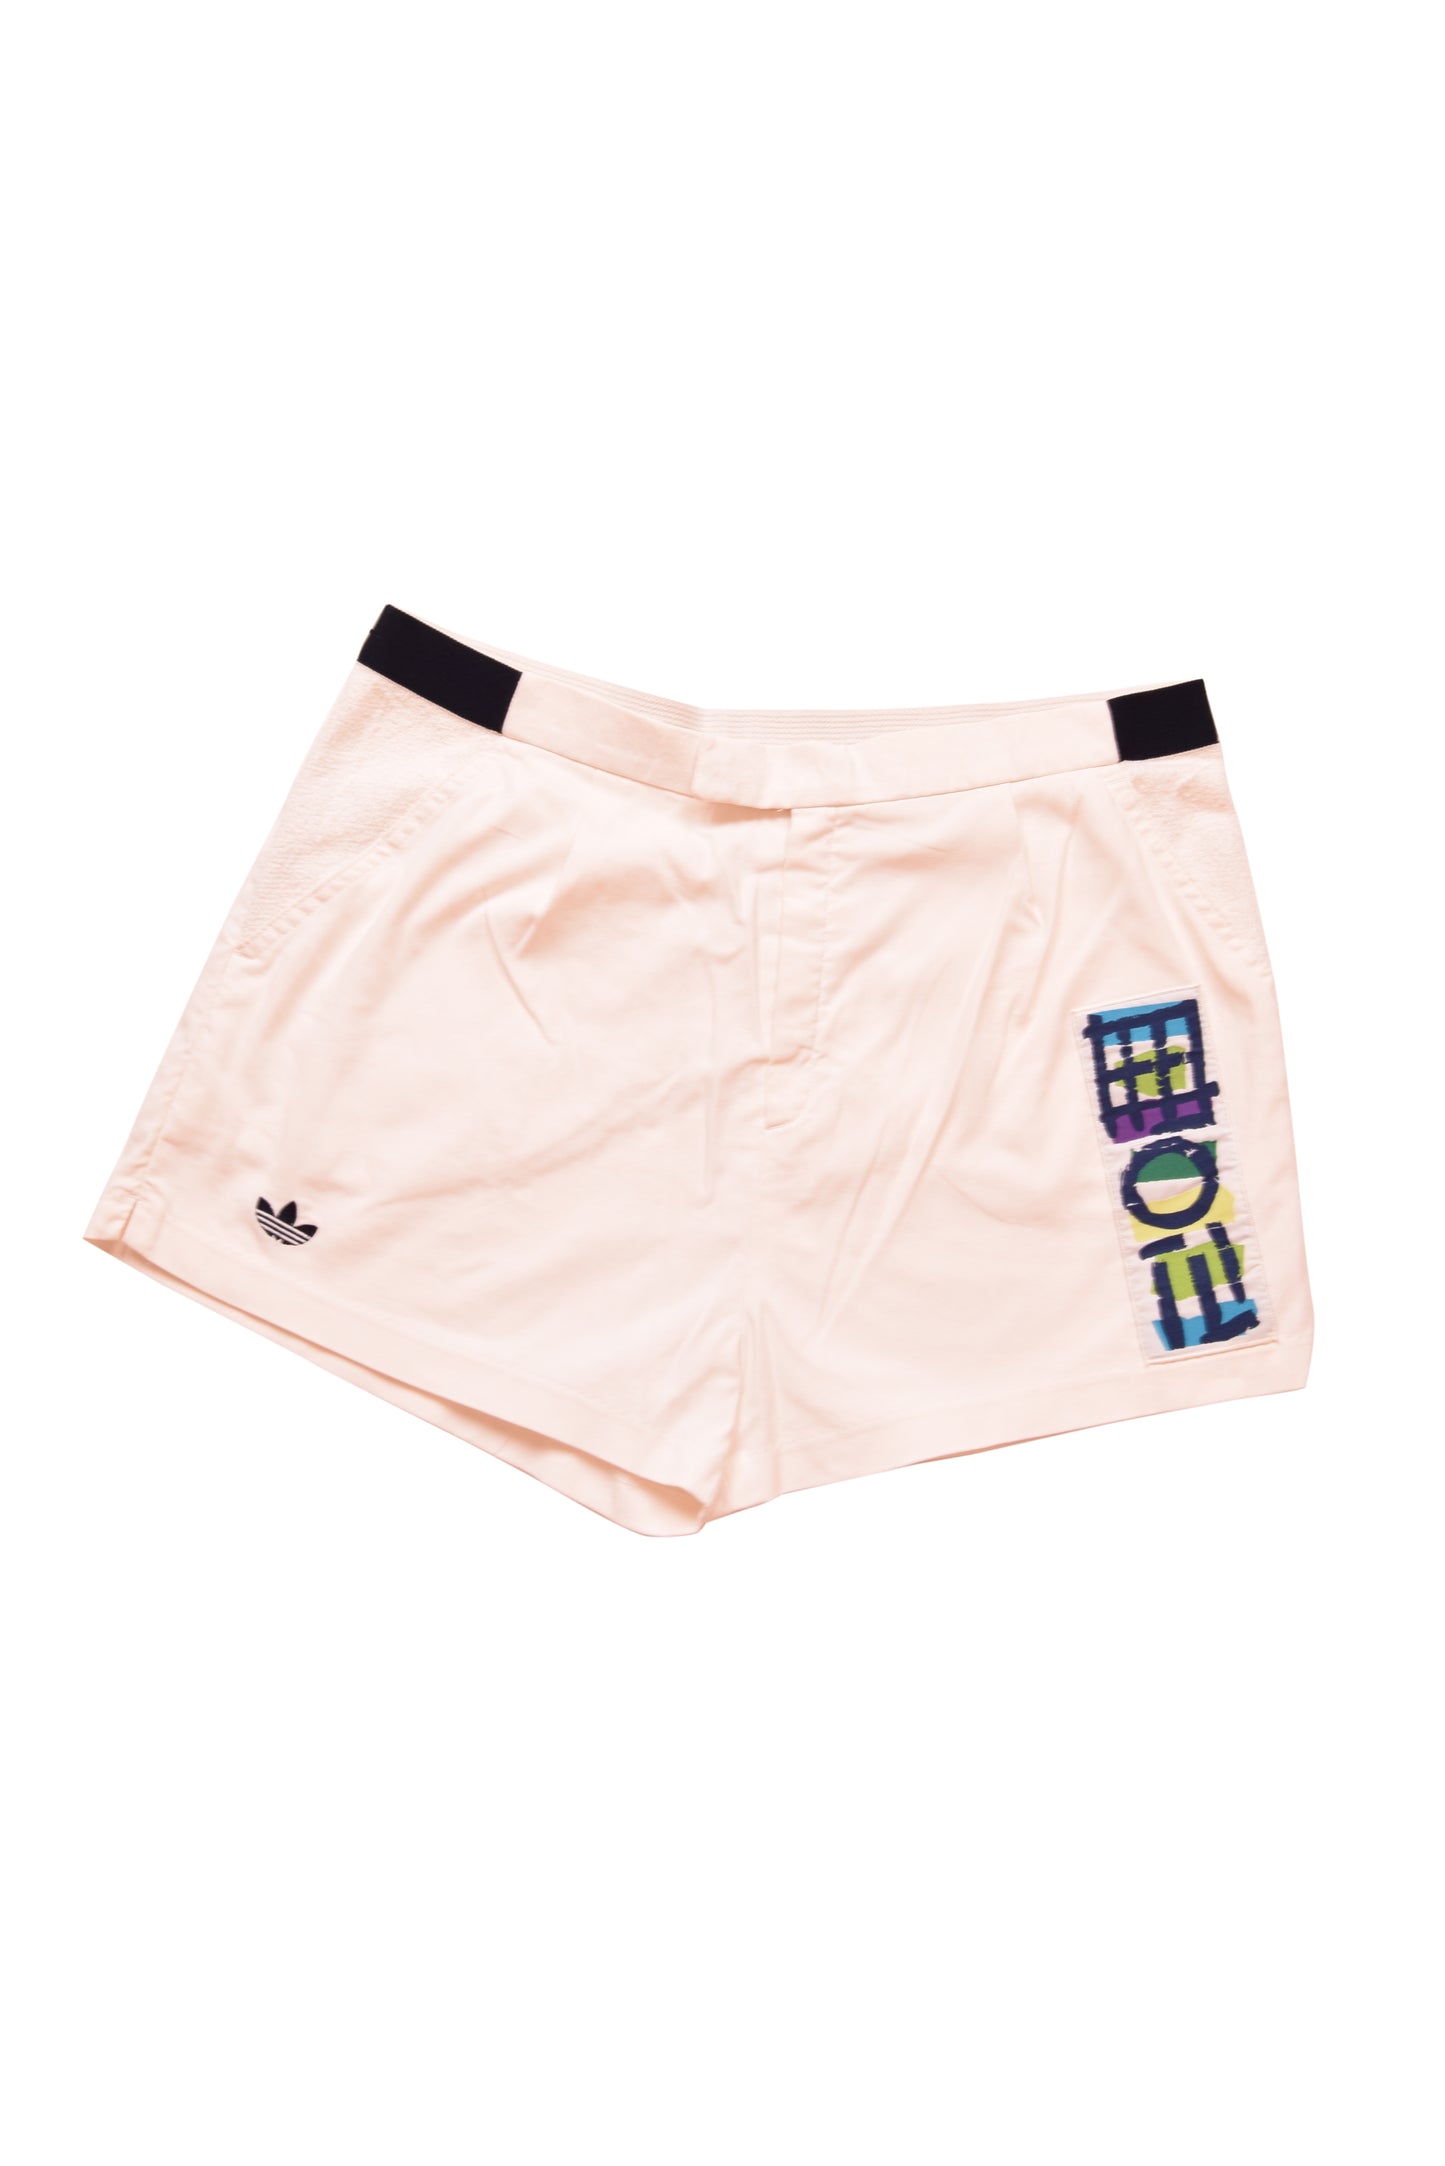 Vintage Adidas Stefan Edberg Tennis Shorts Wimbledon 1991 Size M-L White